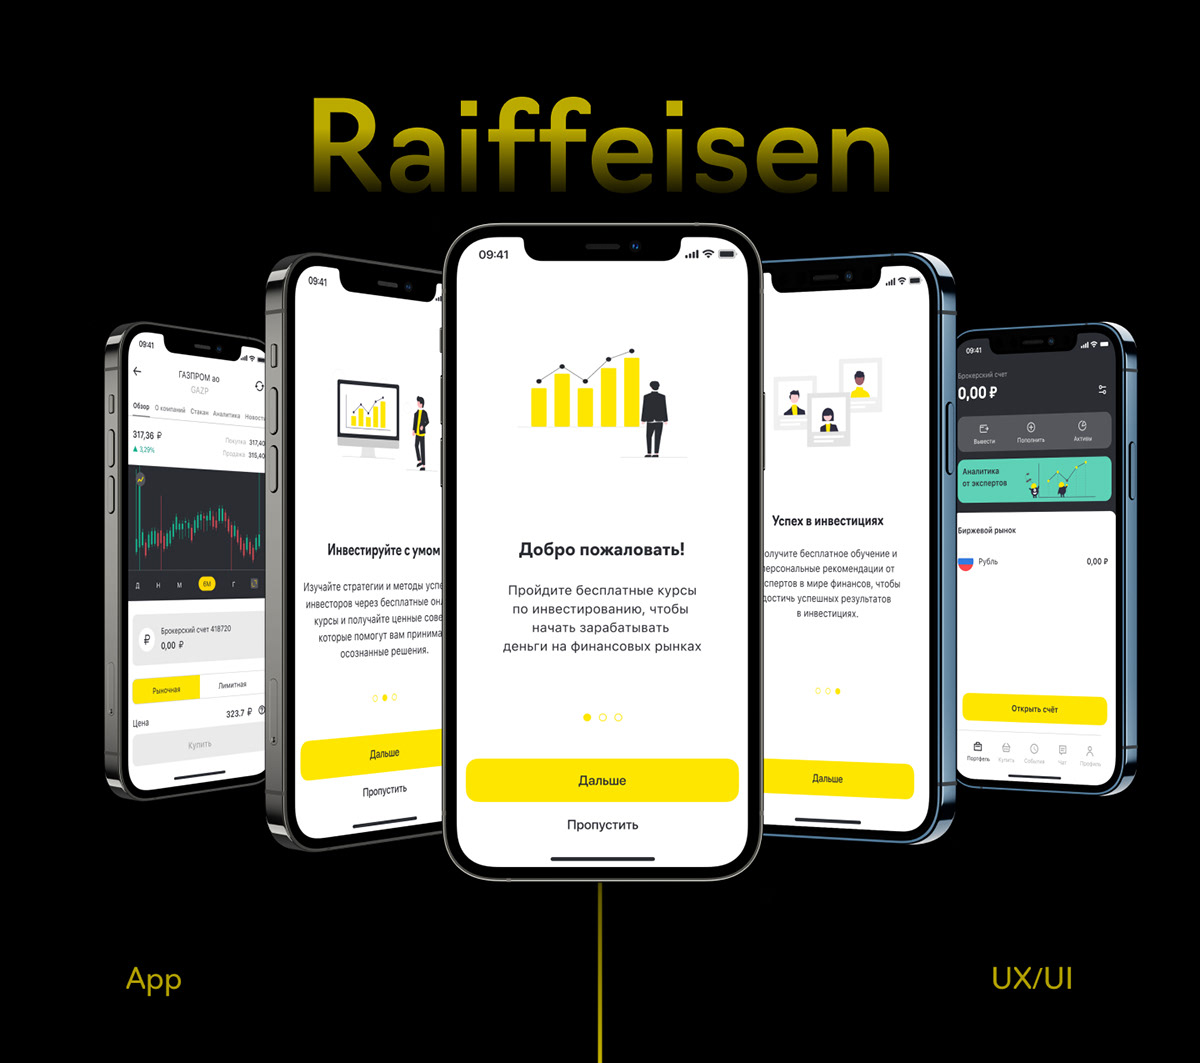 ux UX design Mobile app Investment UI UI/UX user experience app design ui design raiffeisen